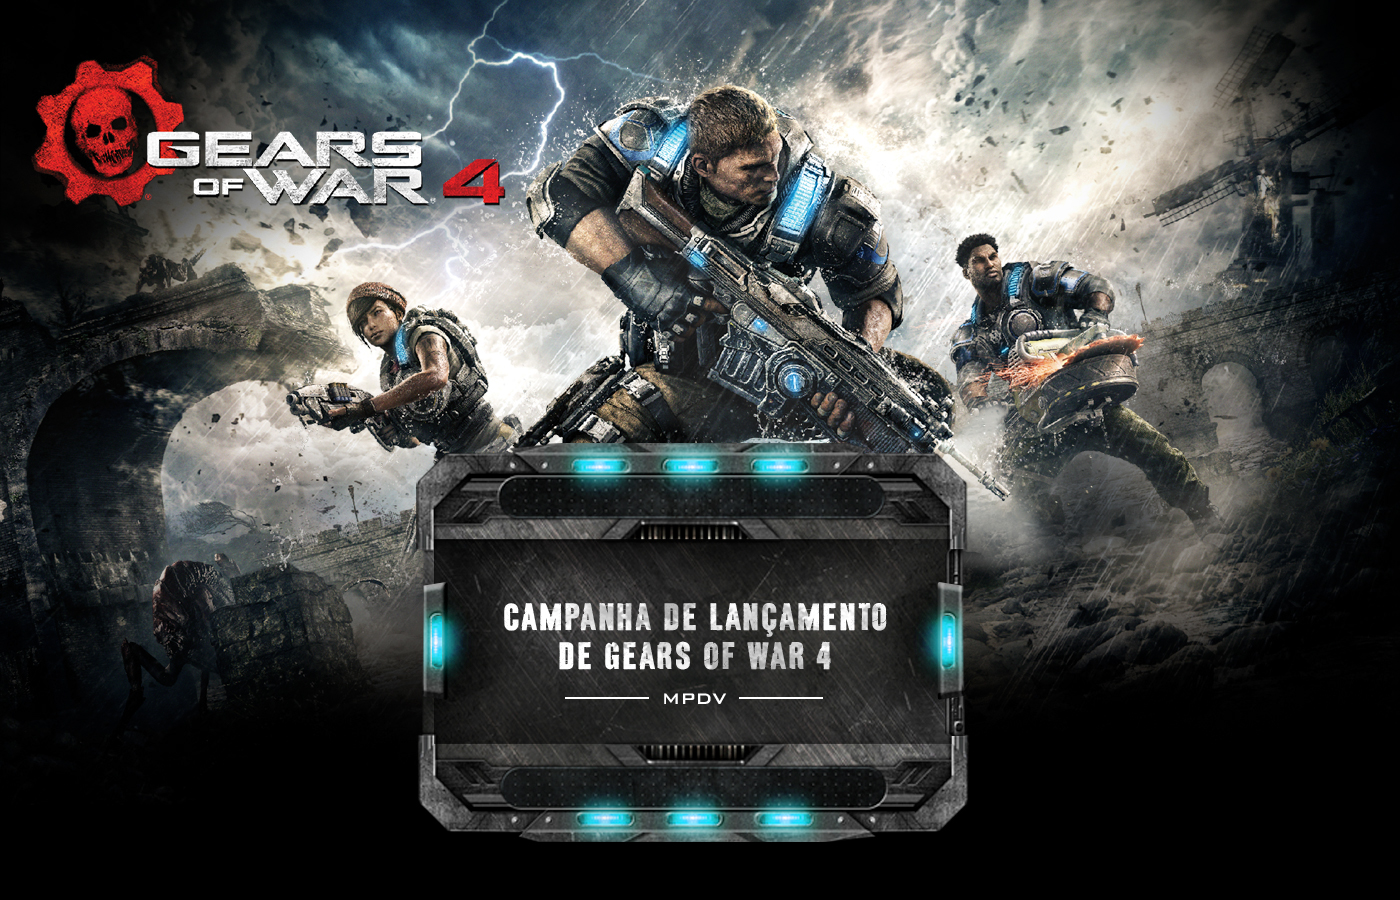 Lançamento Gears of War 4 on Behance